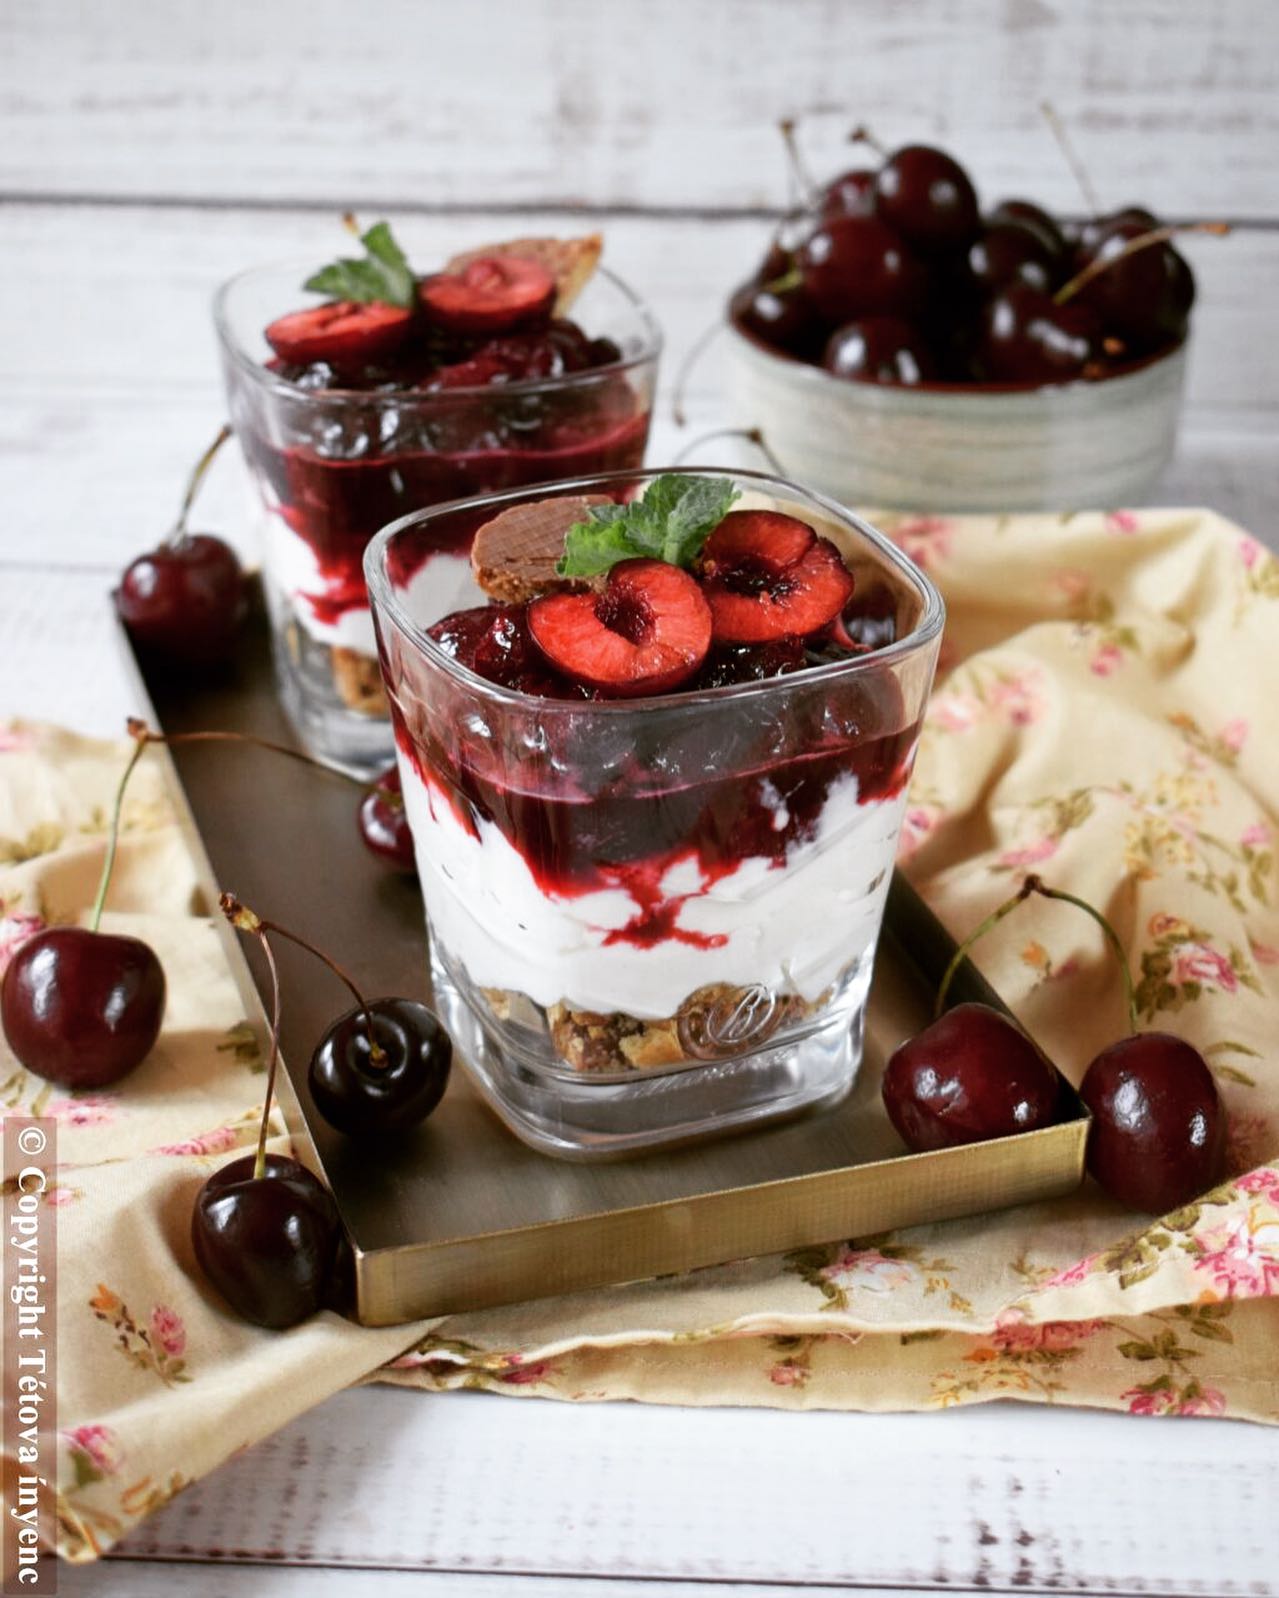 Cseresznyés pohárkrém ricottával #cherry #ricotta #dessert #dessertporn #tetovainyenc #mutimiteszel #foodblogger #foodphotography #mik_gasztro #foodie #foodinstagram #cseresznye